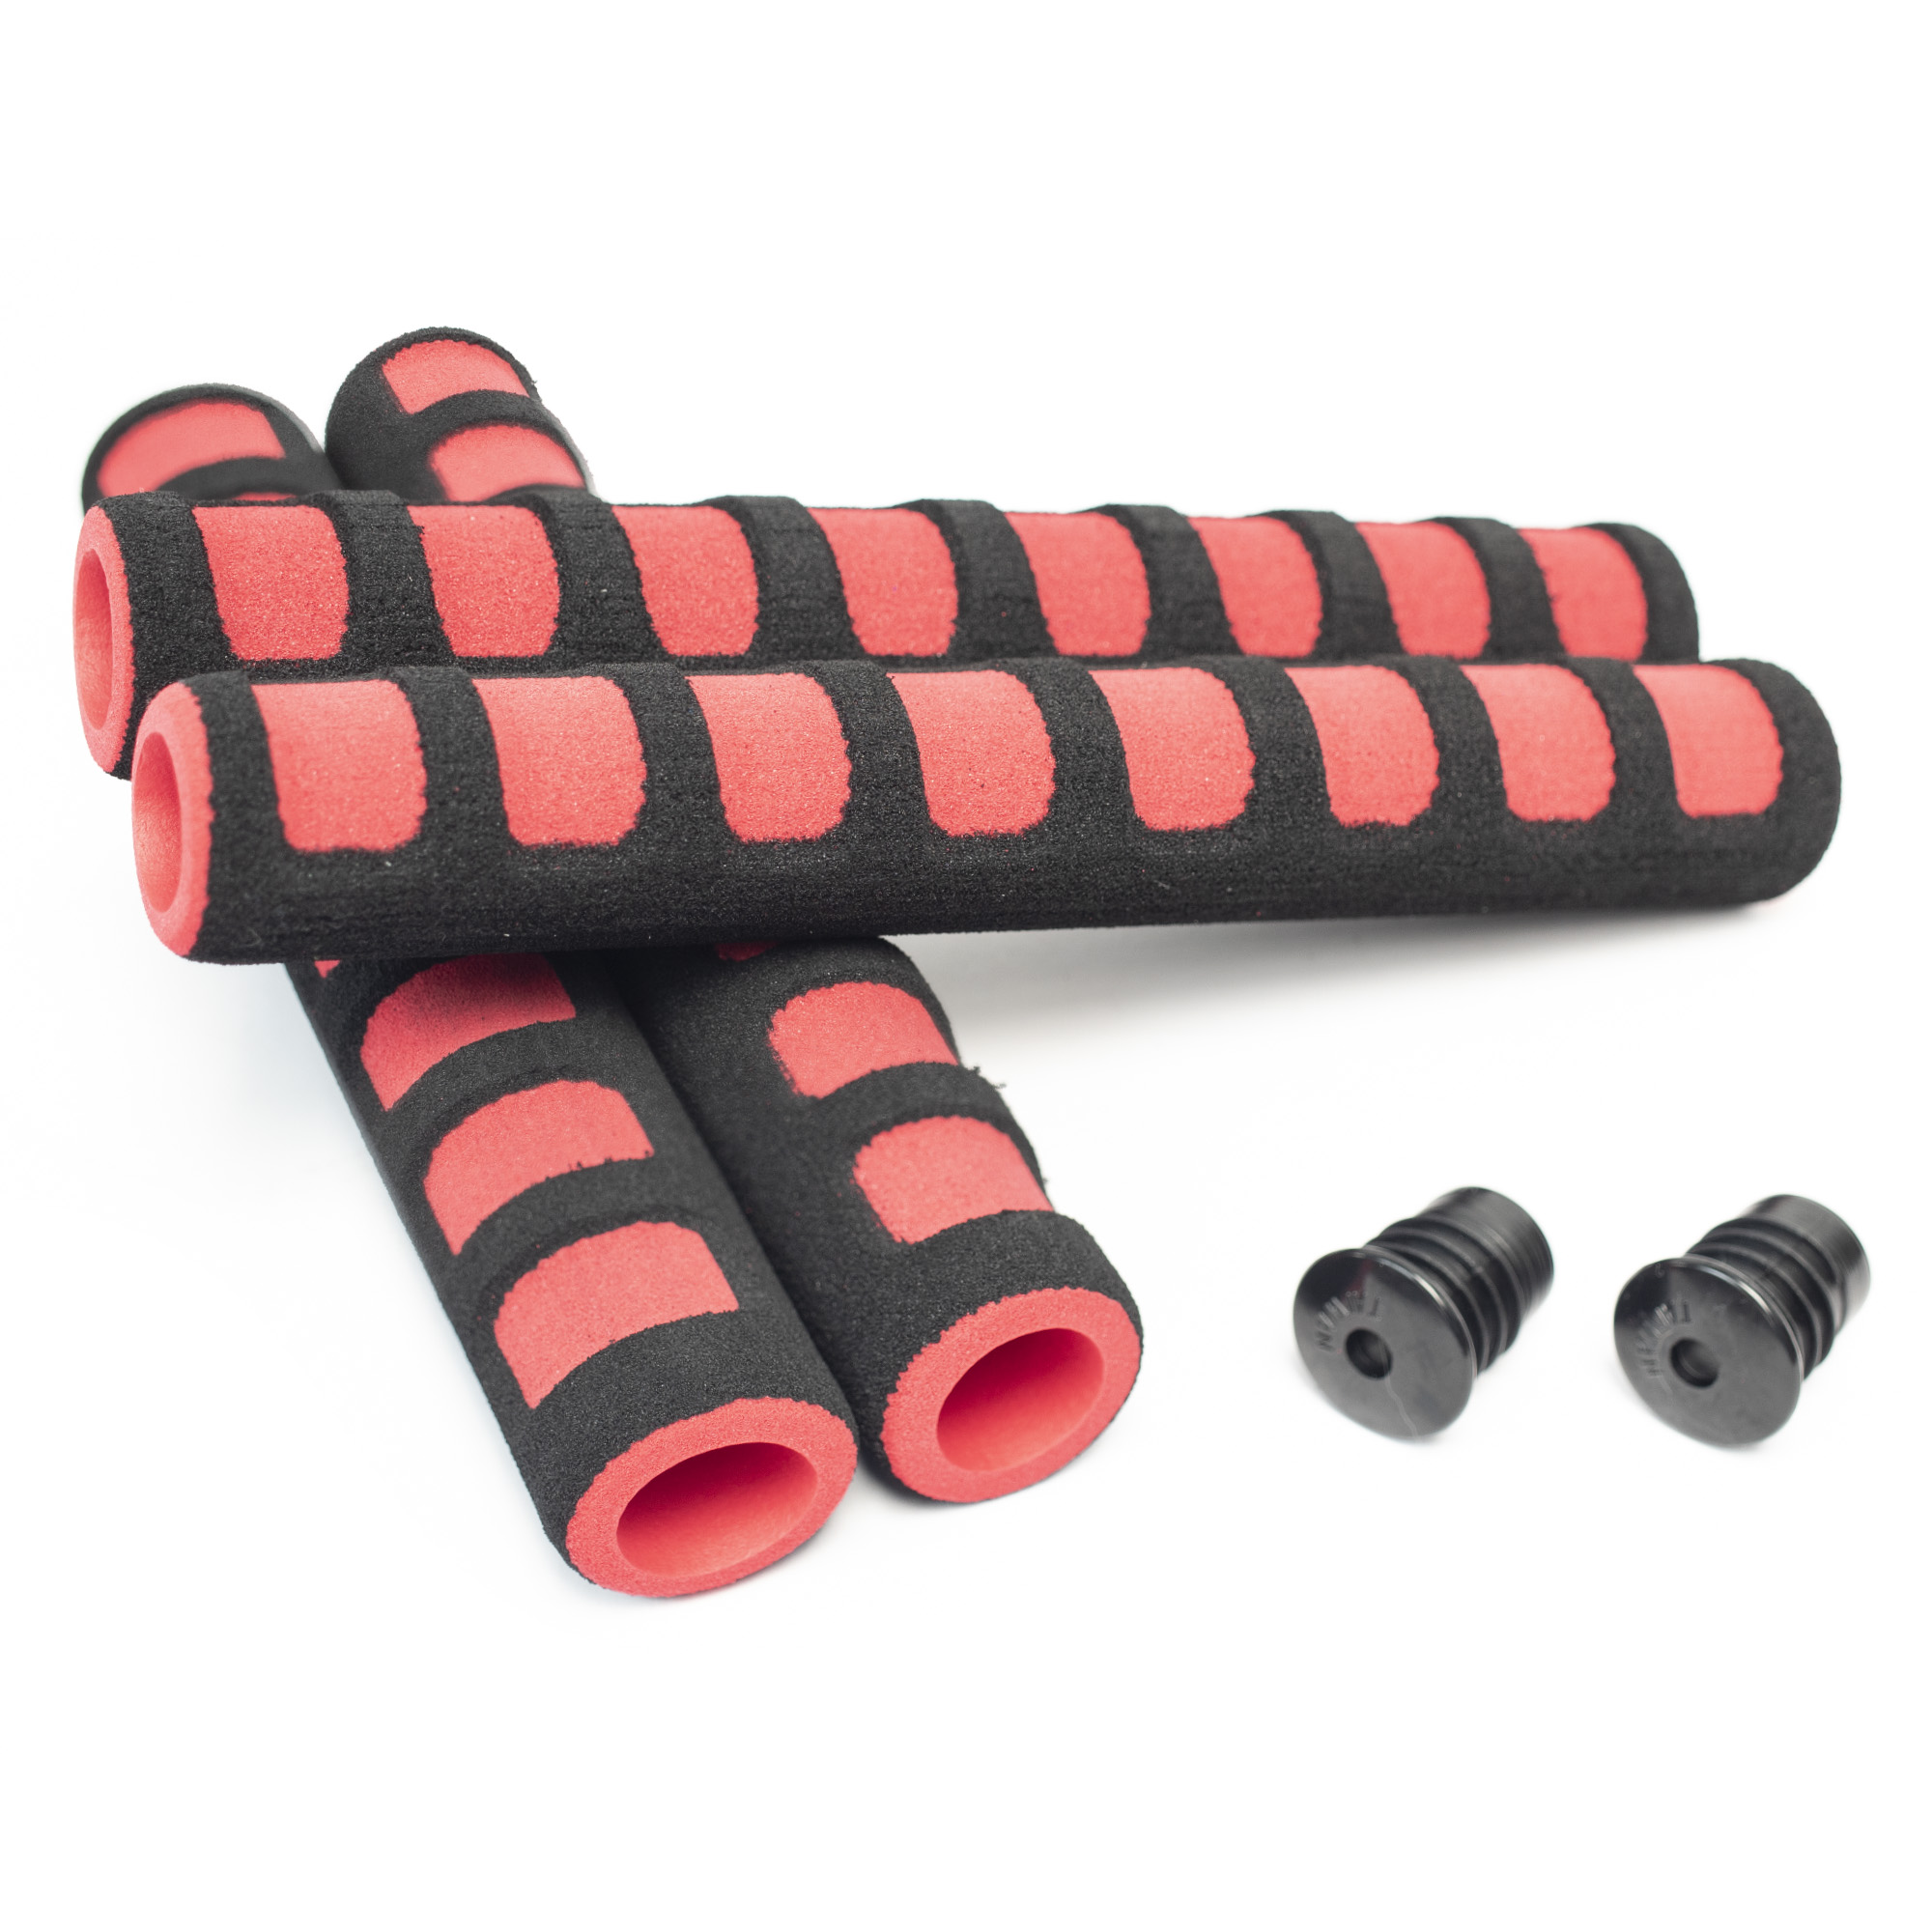 ALIEN PROS Cinta de manillar de bicicleta de poliuretano (juego de 2)  negro, rojo, blanco, rosa, azul, mejora el agarre de tu bicicleta con esta  cinta